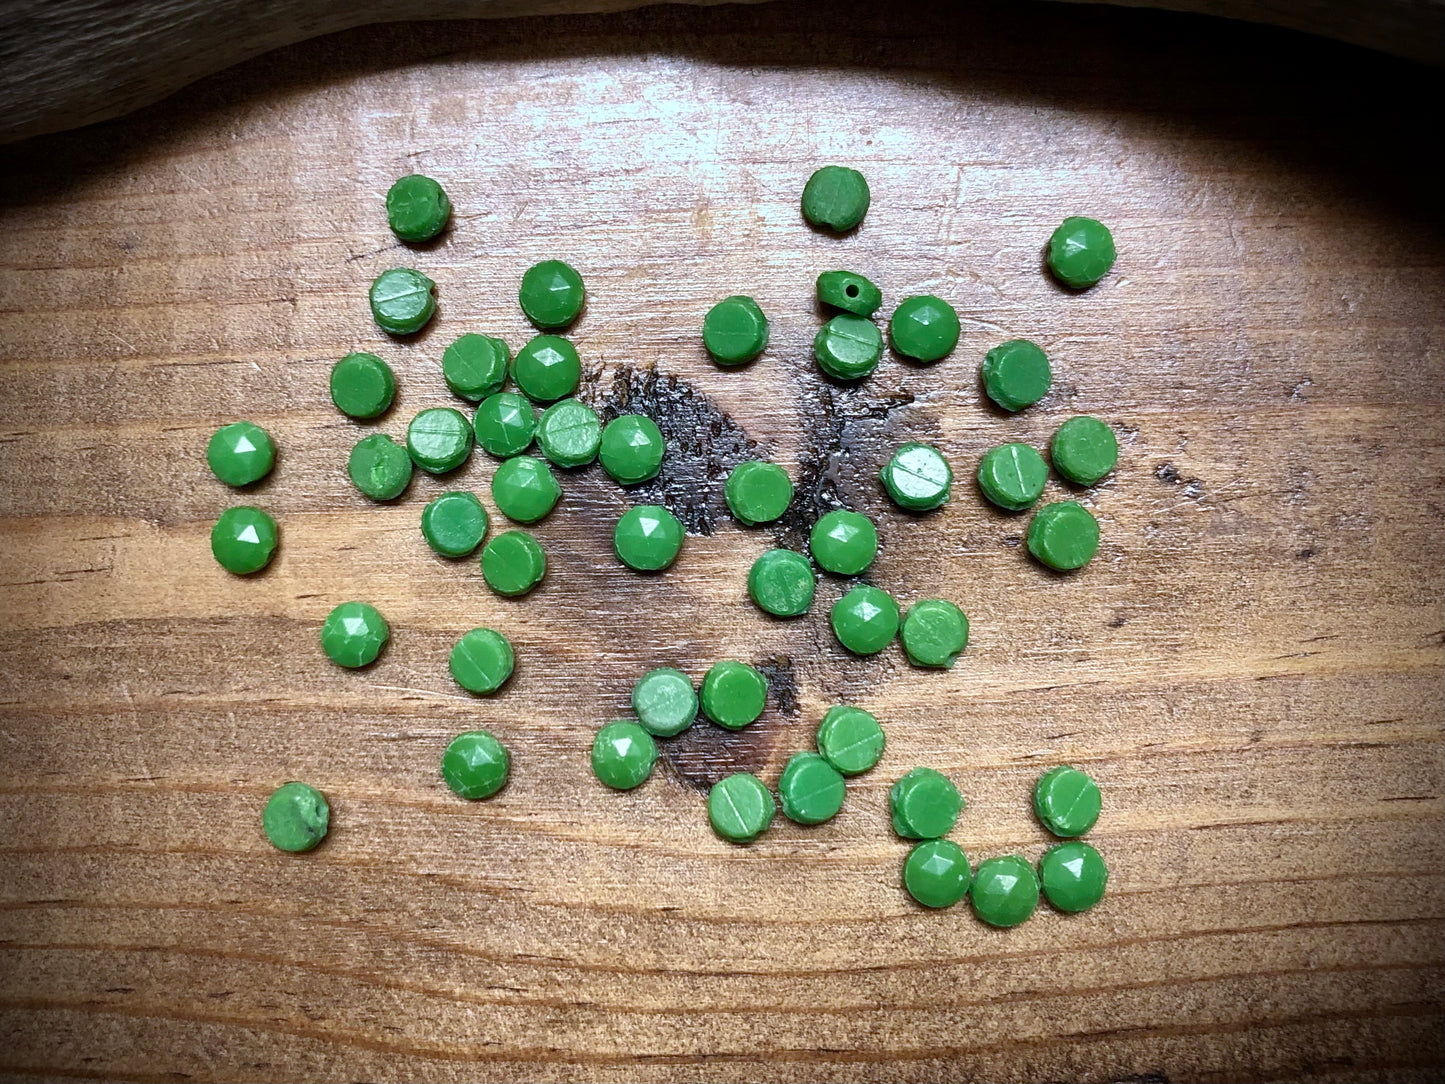 Vintage Czech Glass - Grass Green Nailhead Beads